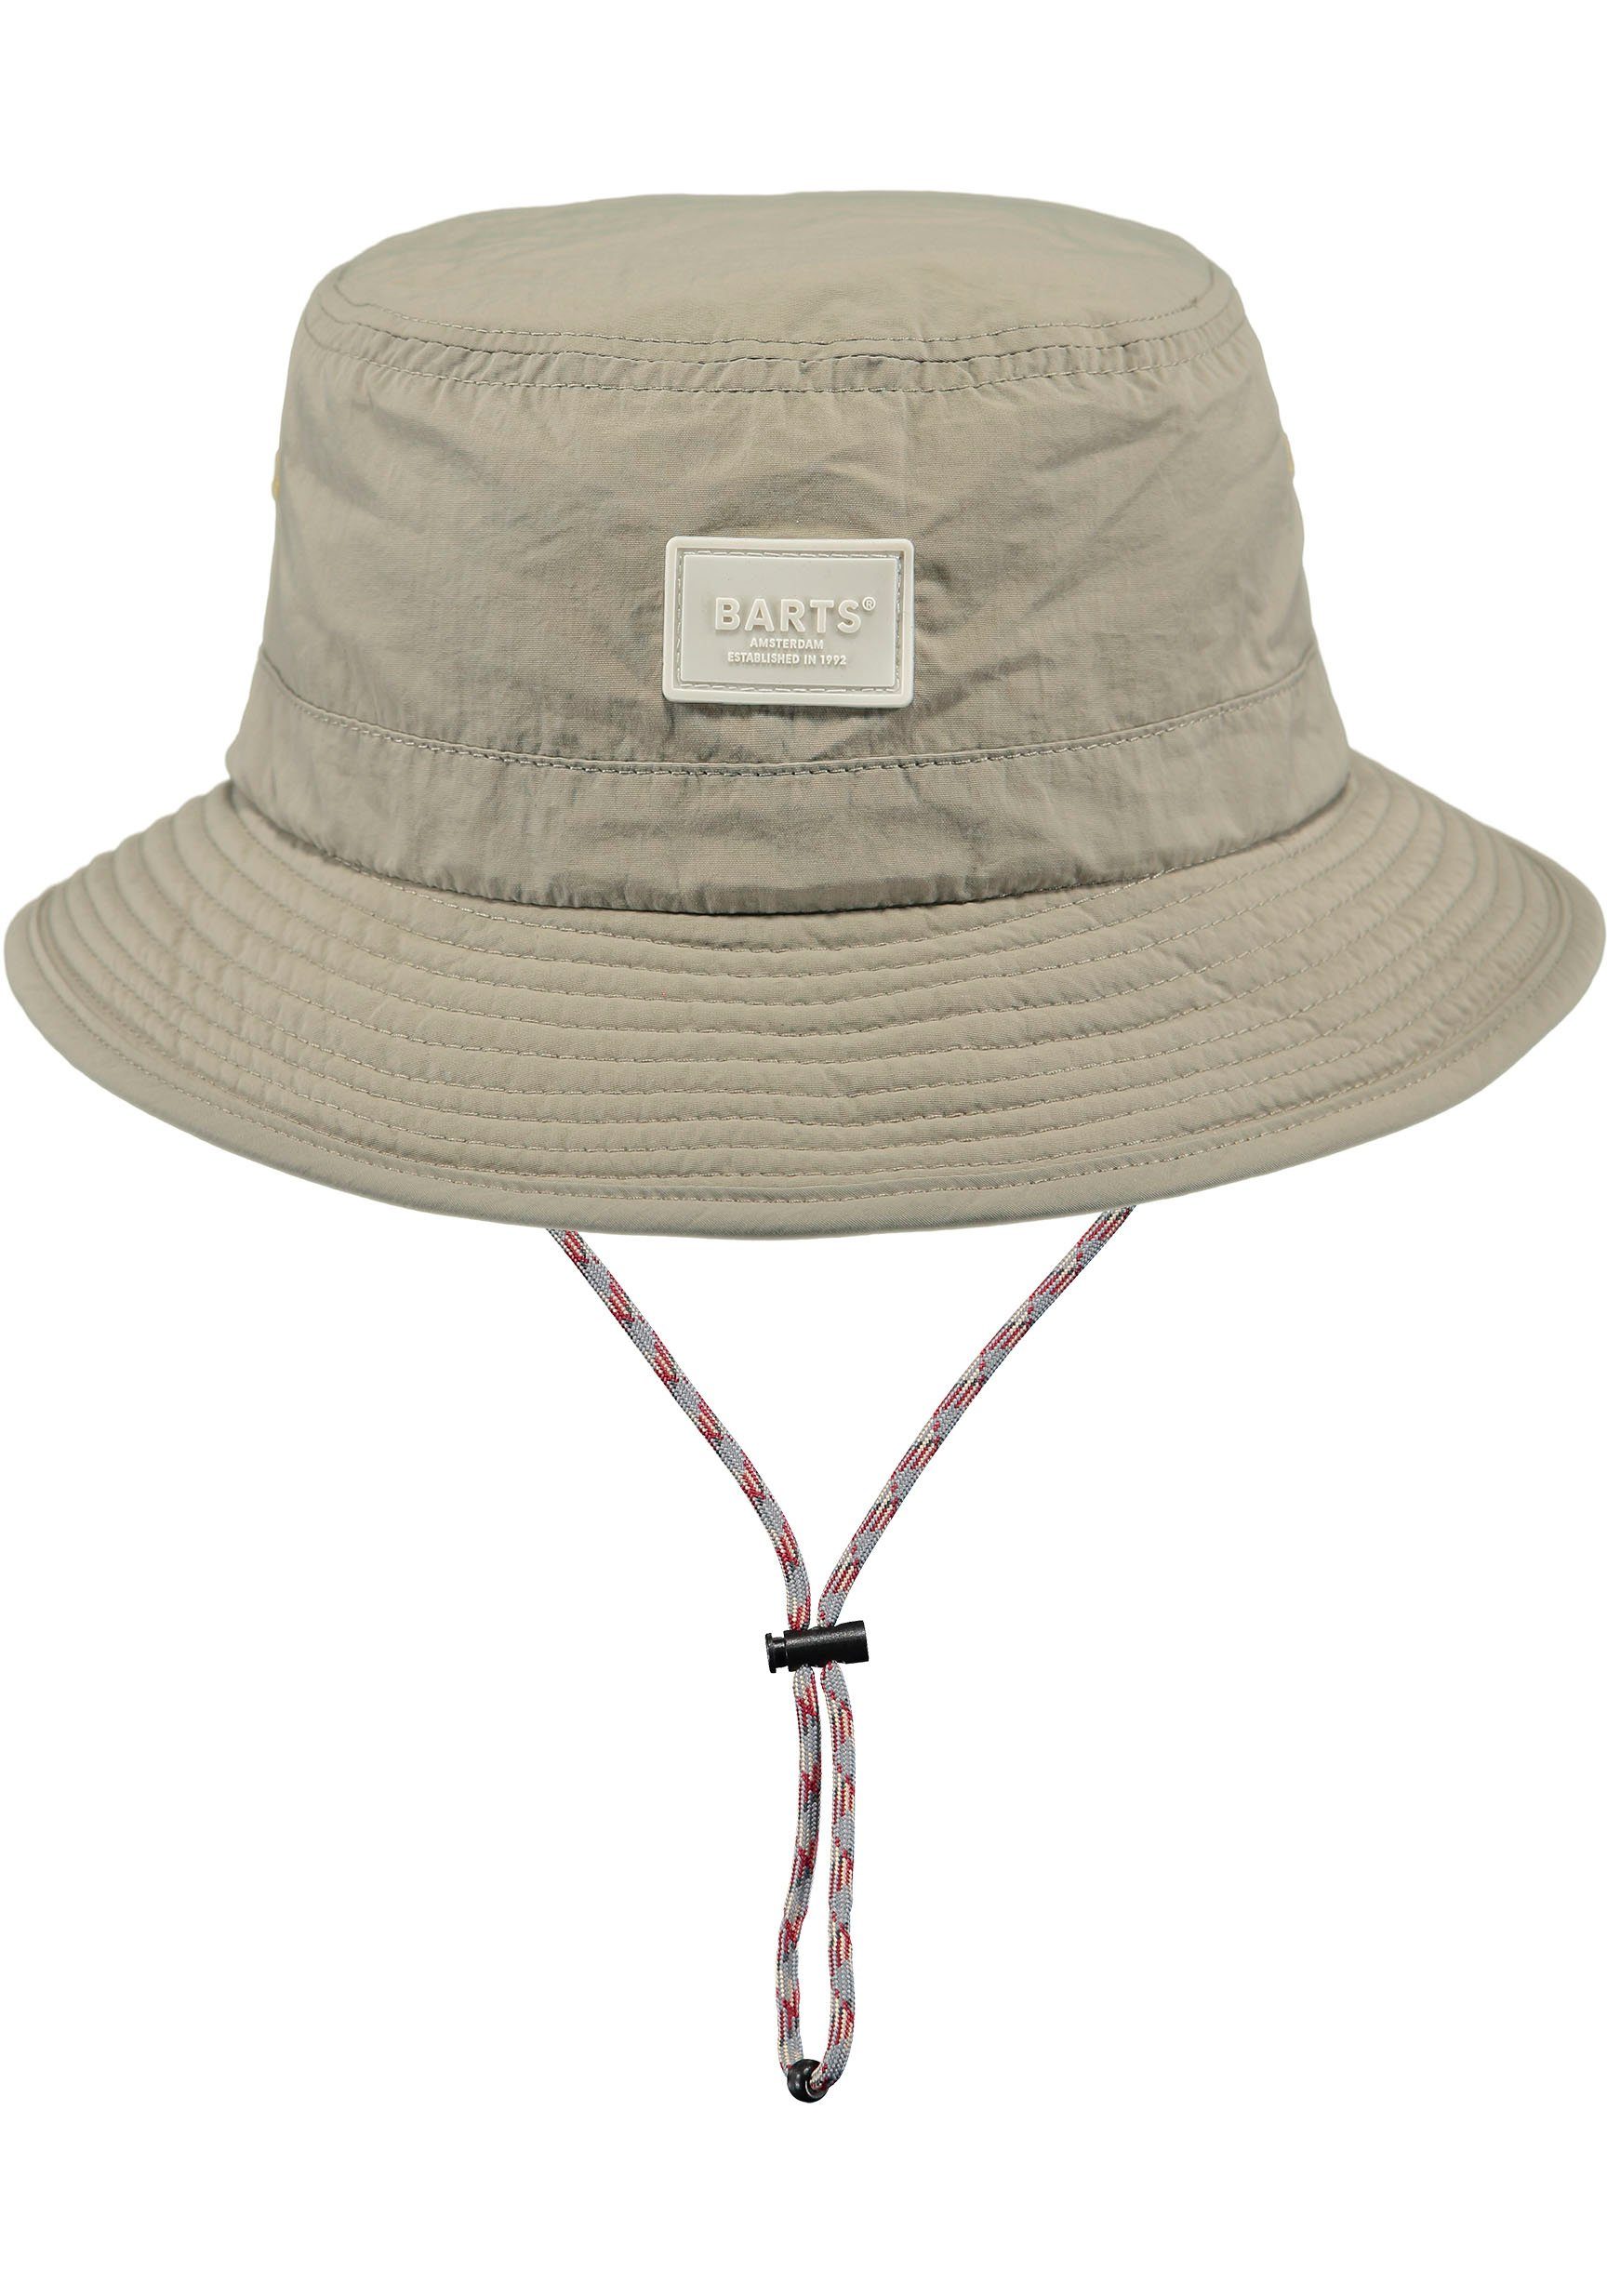 Passform innenliegendes Bindeband, verstellbare Barts Hutband natur Fischerhut durch mit